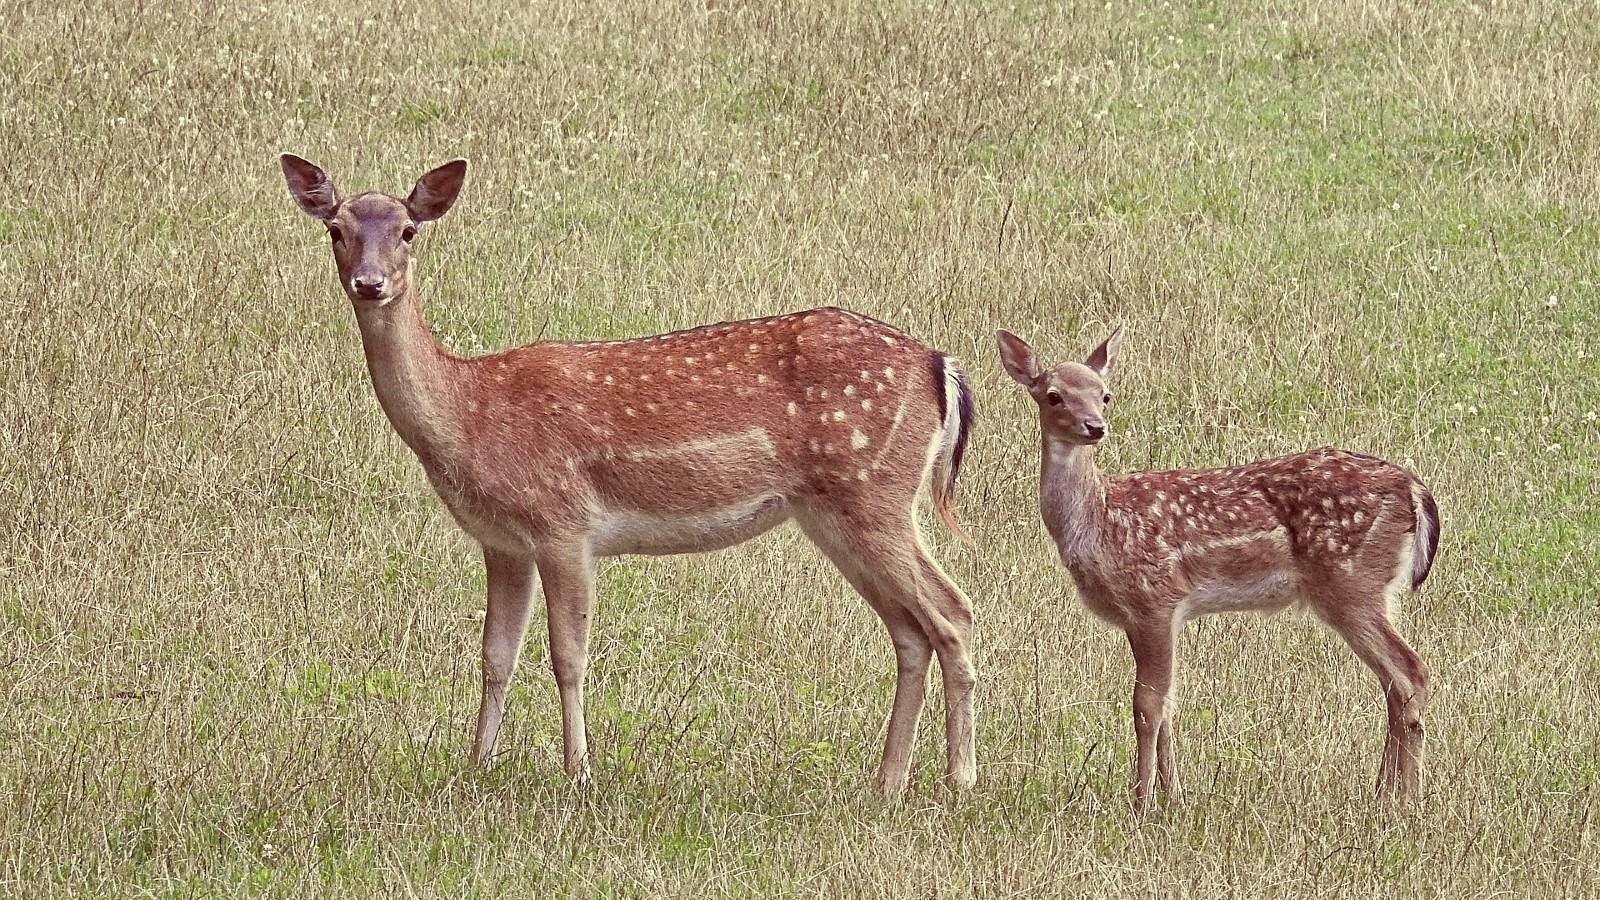 two deer standing in grass